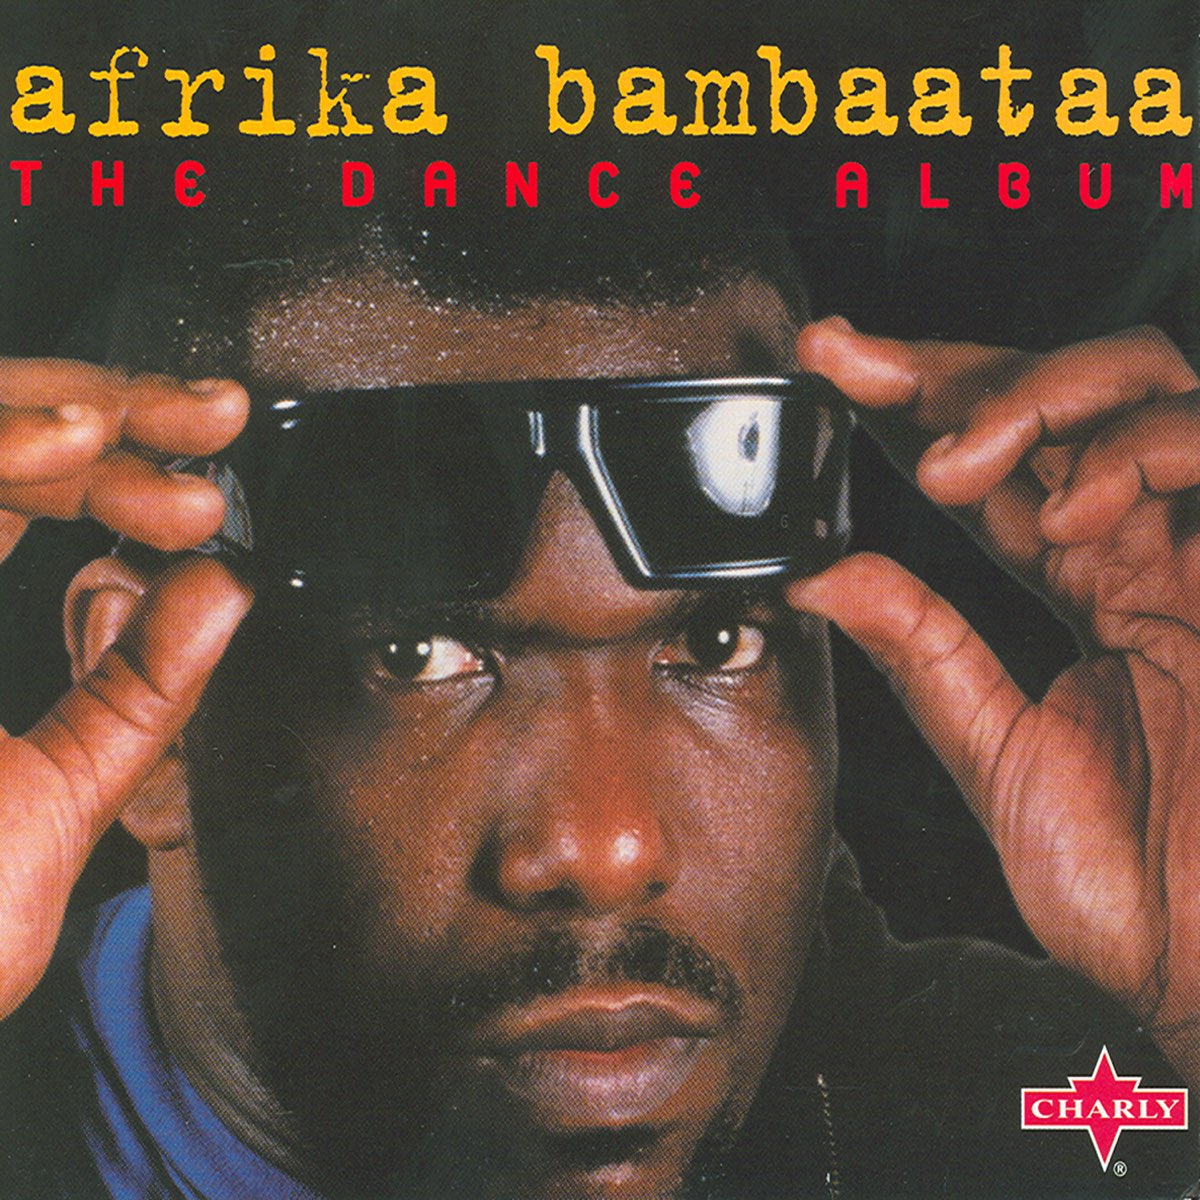 Африка Бамбата. DJ Африка Бамбаатаа. Африка Бамбата 2020. Afrika Bambaataa о хип-хоп.